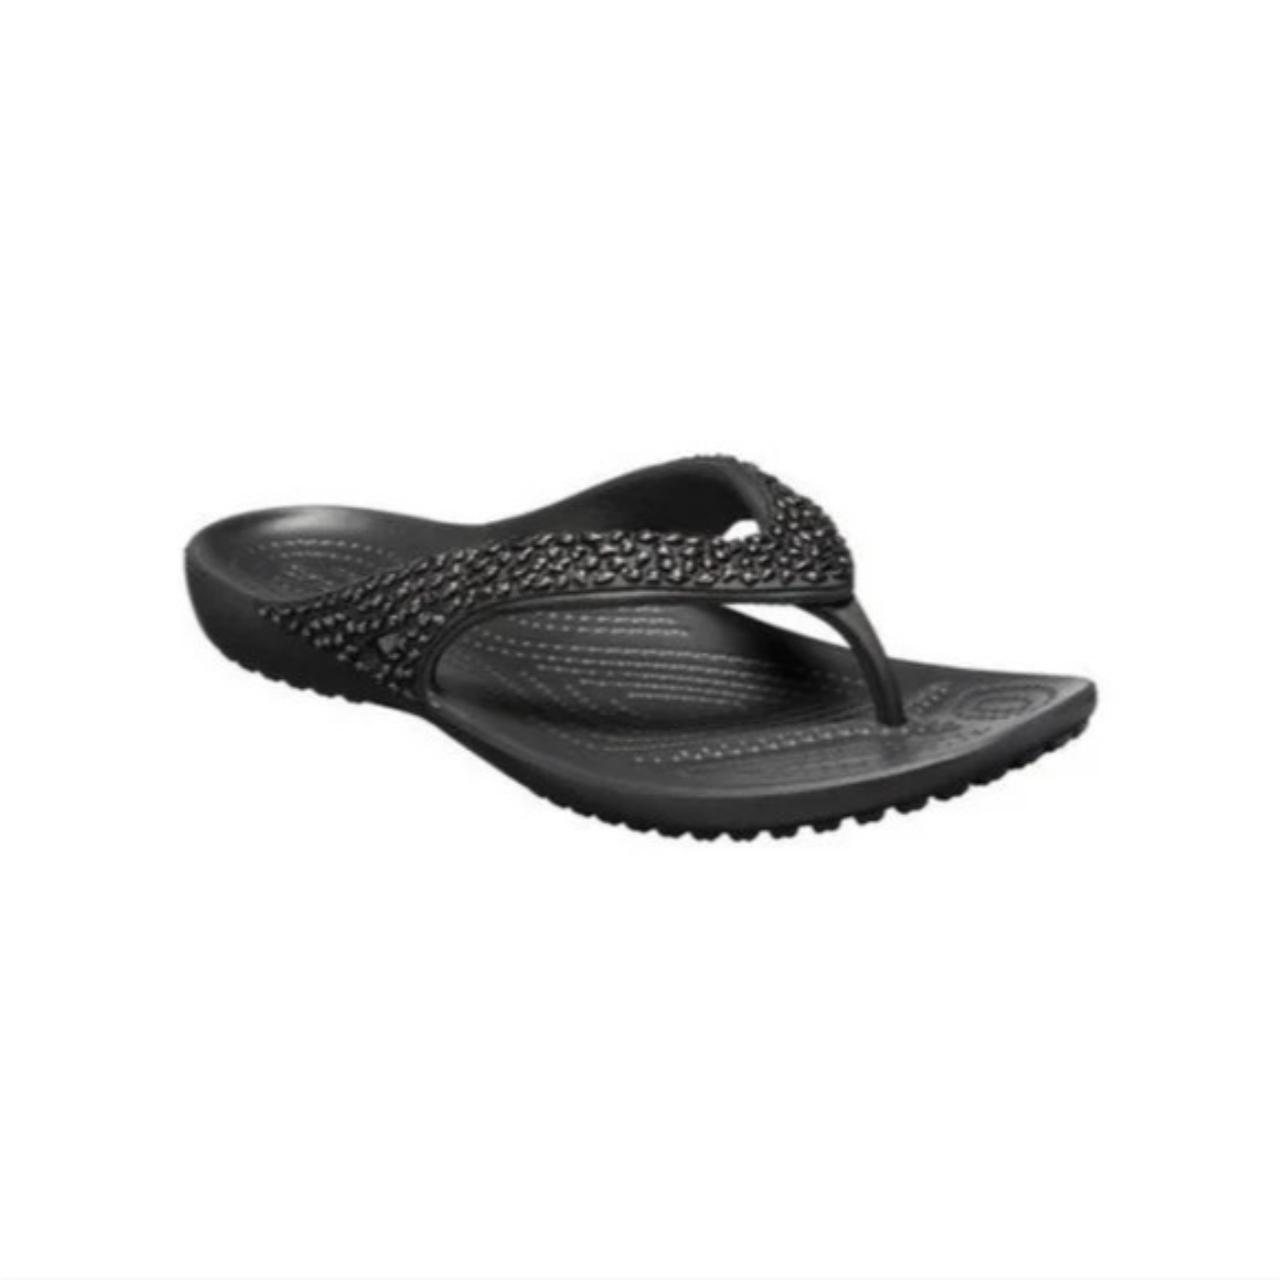 Buy Crocs Black Serena Women Sandals Online